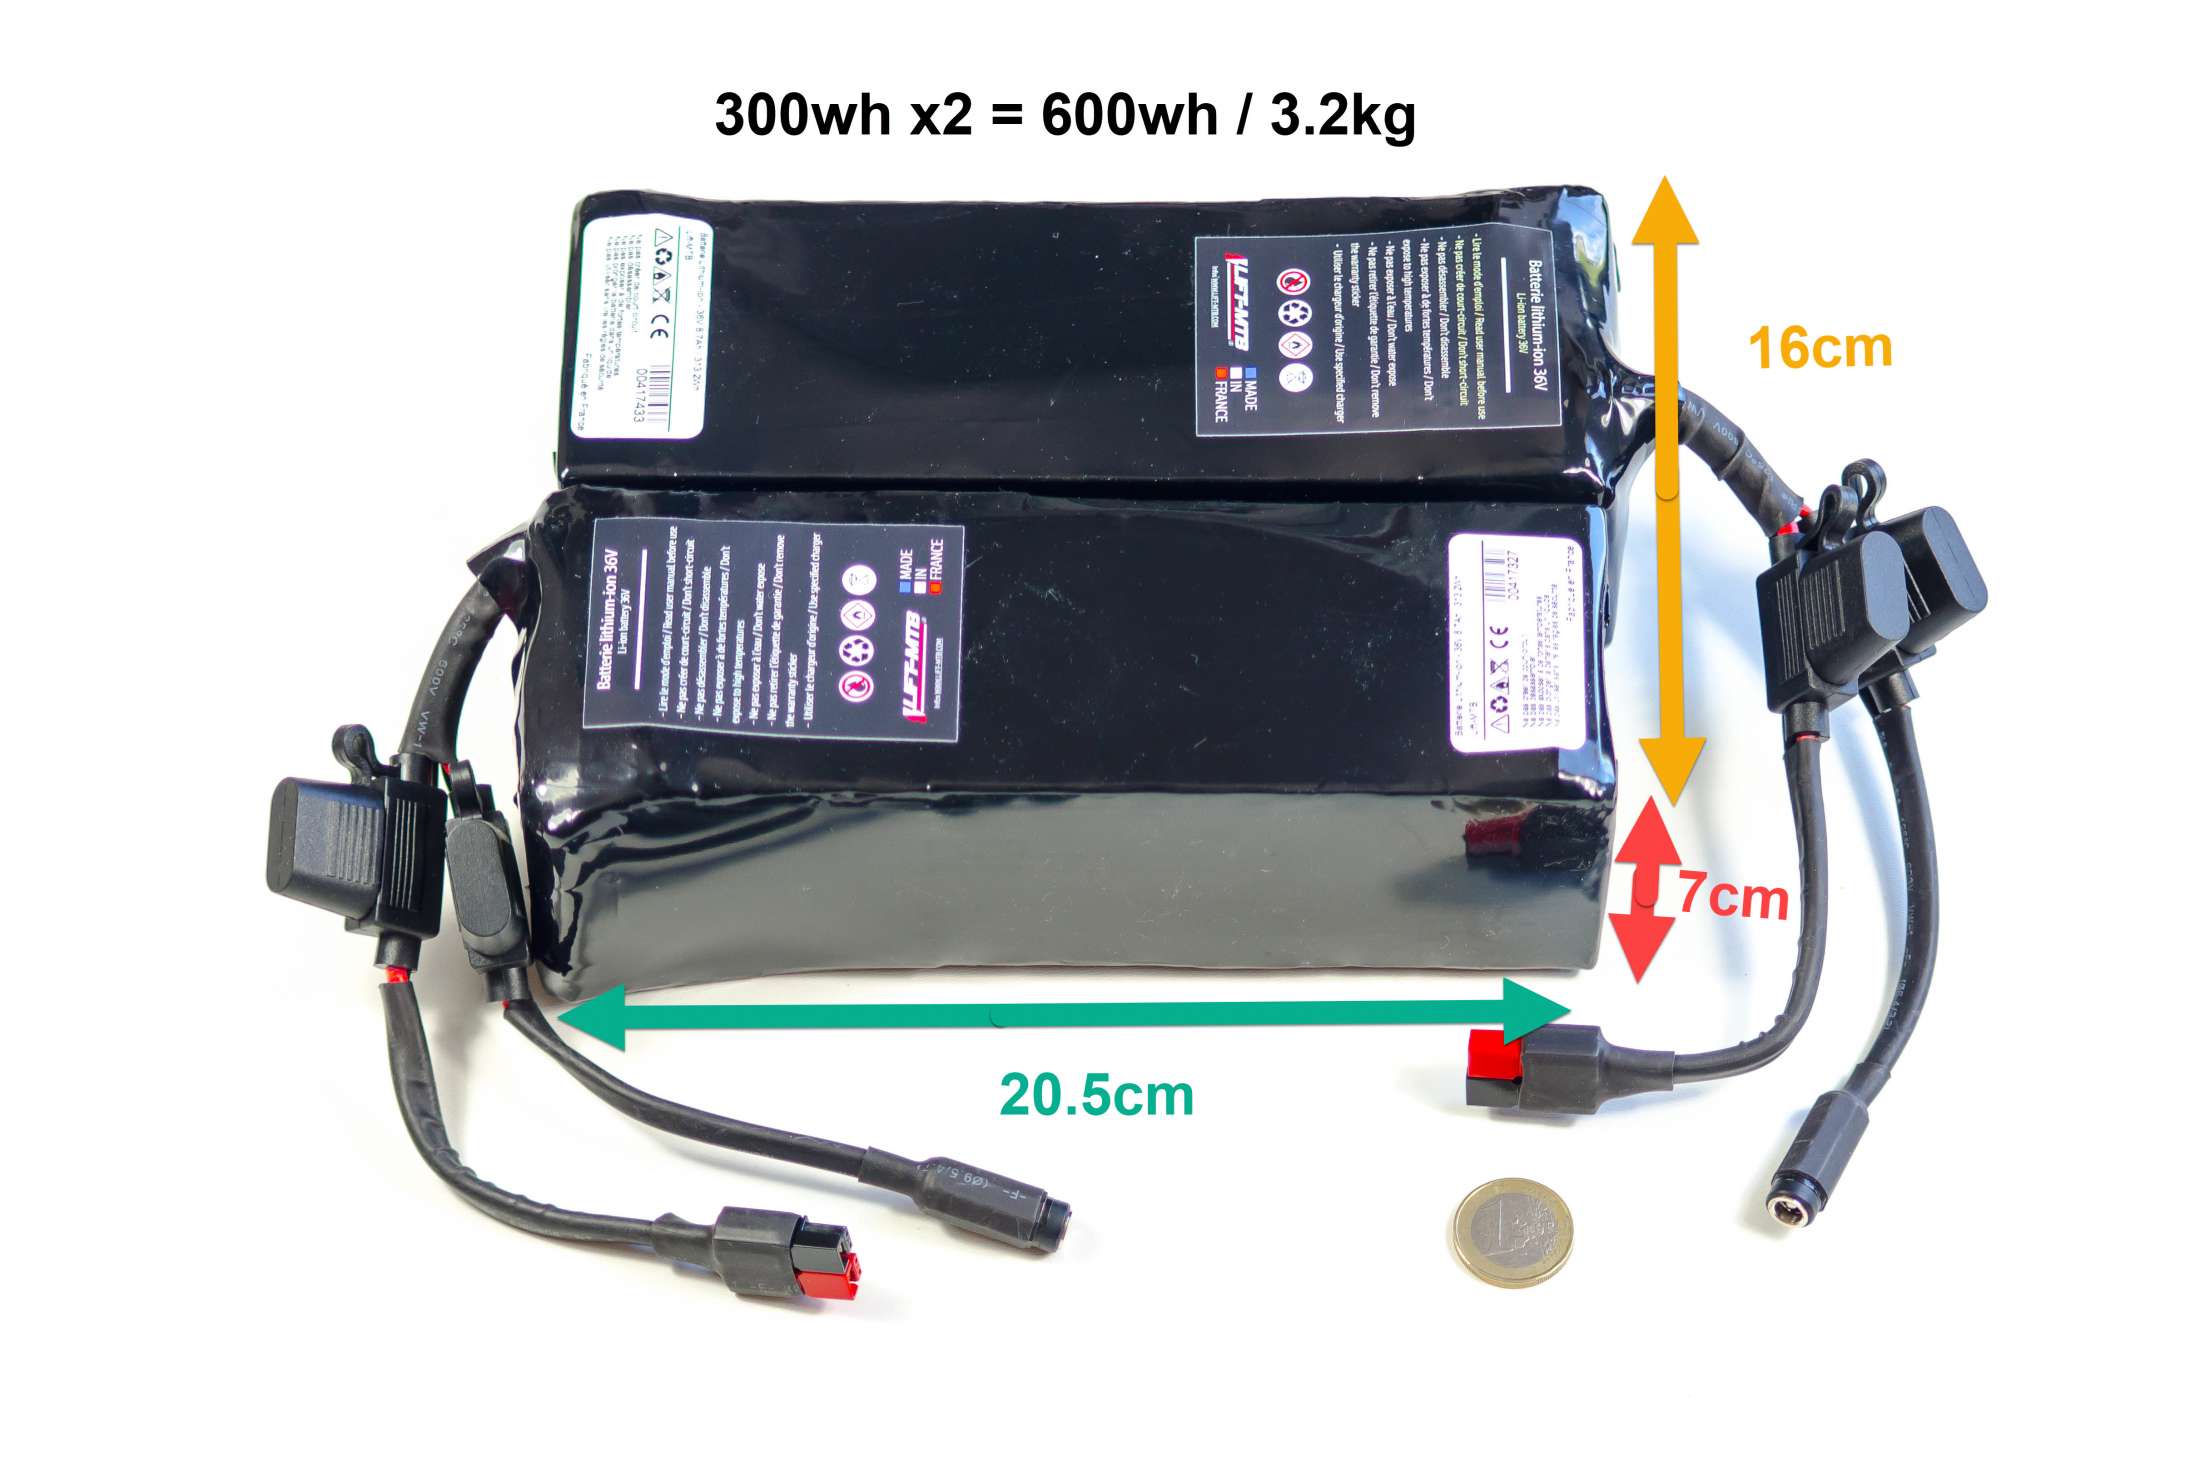 Batterie électrique 500 Wh pour kit moteur pédalier LIFT-MTB.